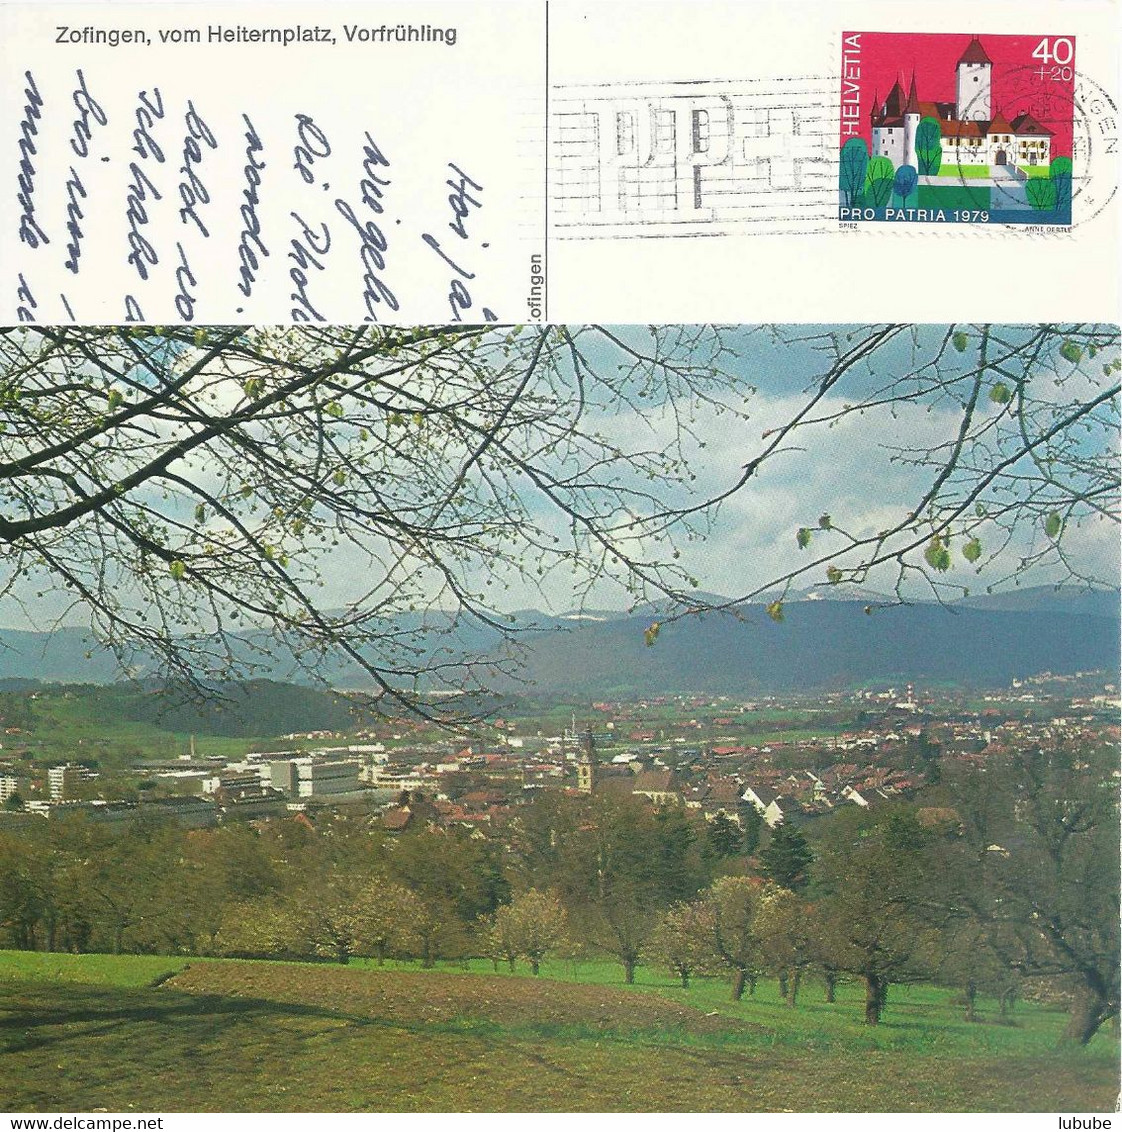 Zofingen - Blick Vom Heiternplatz Im Vorfrühling           Ca. 1970 - Zofingue